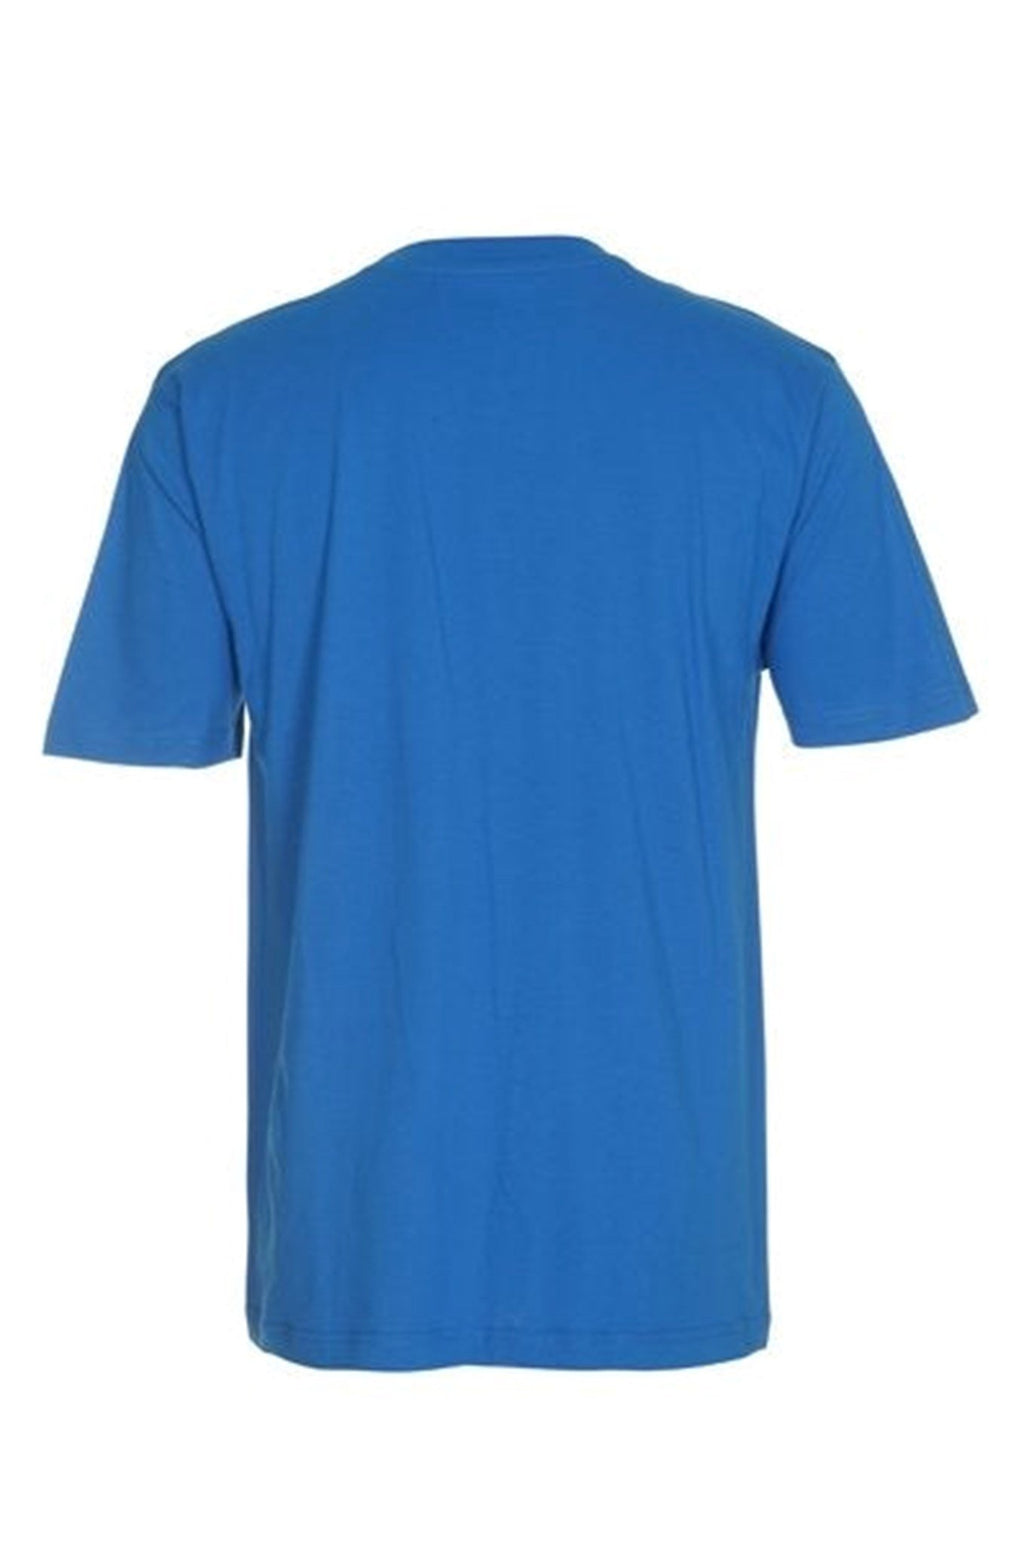 Oversized T-shirt - Turkis Blå